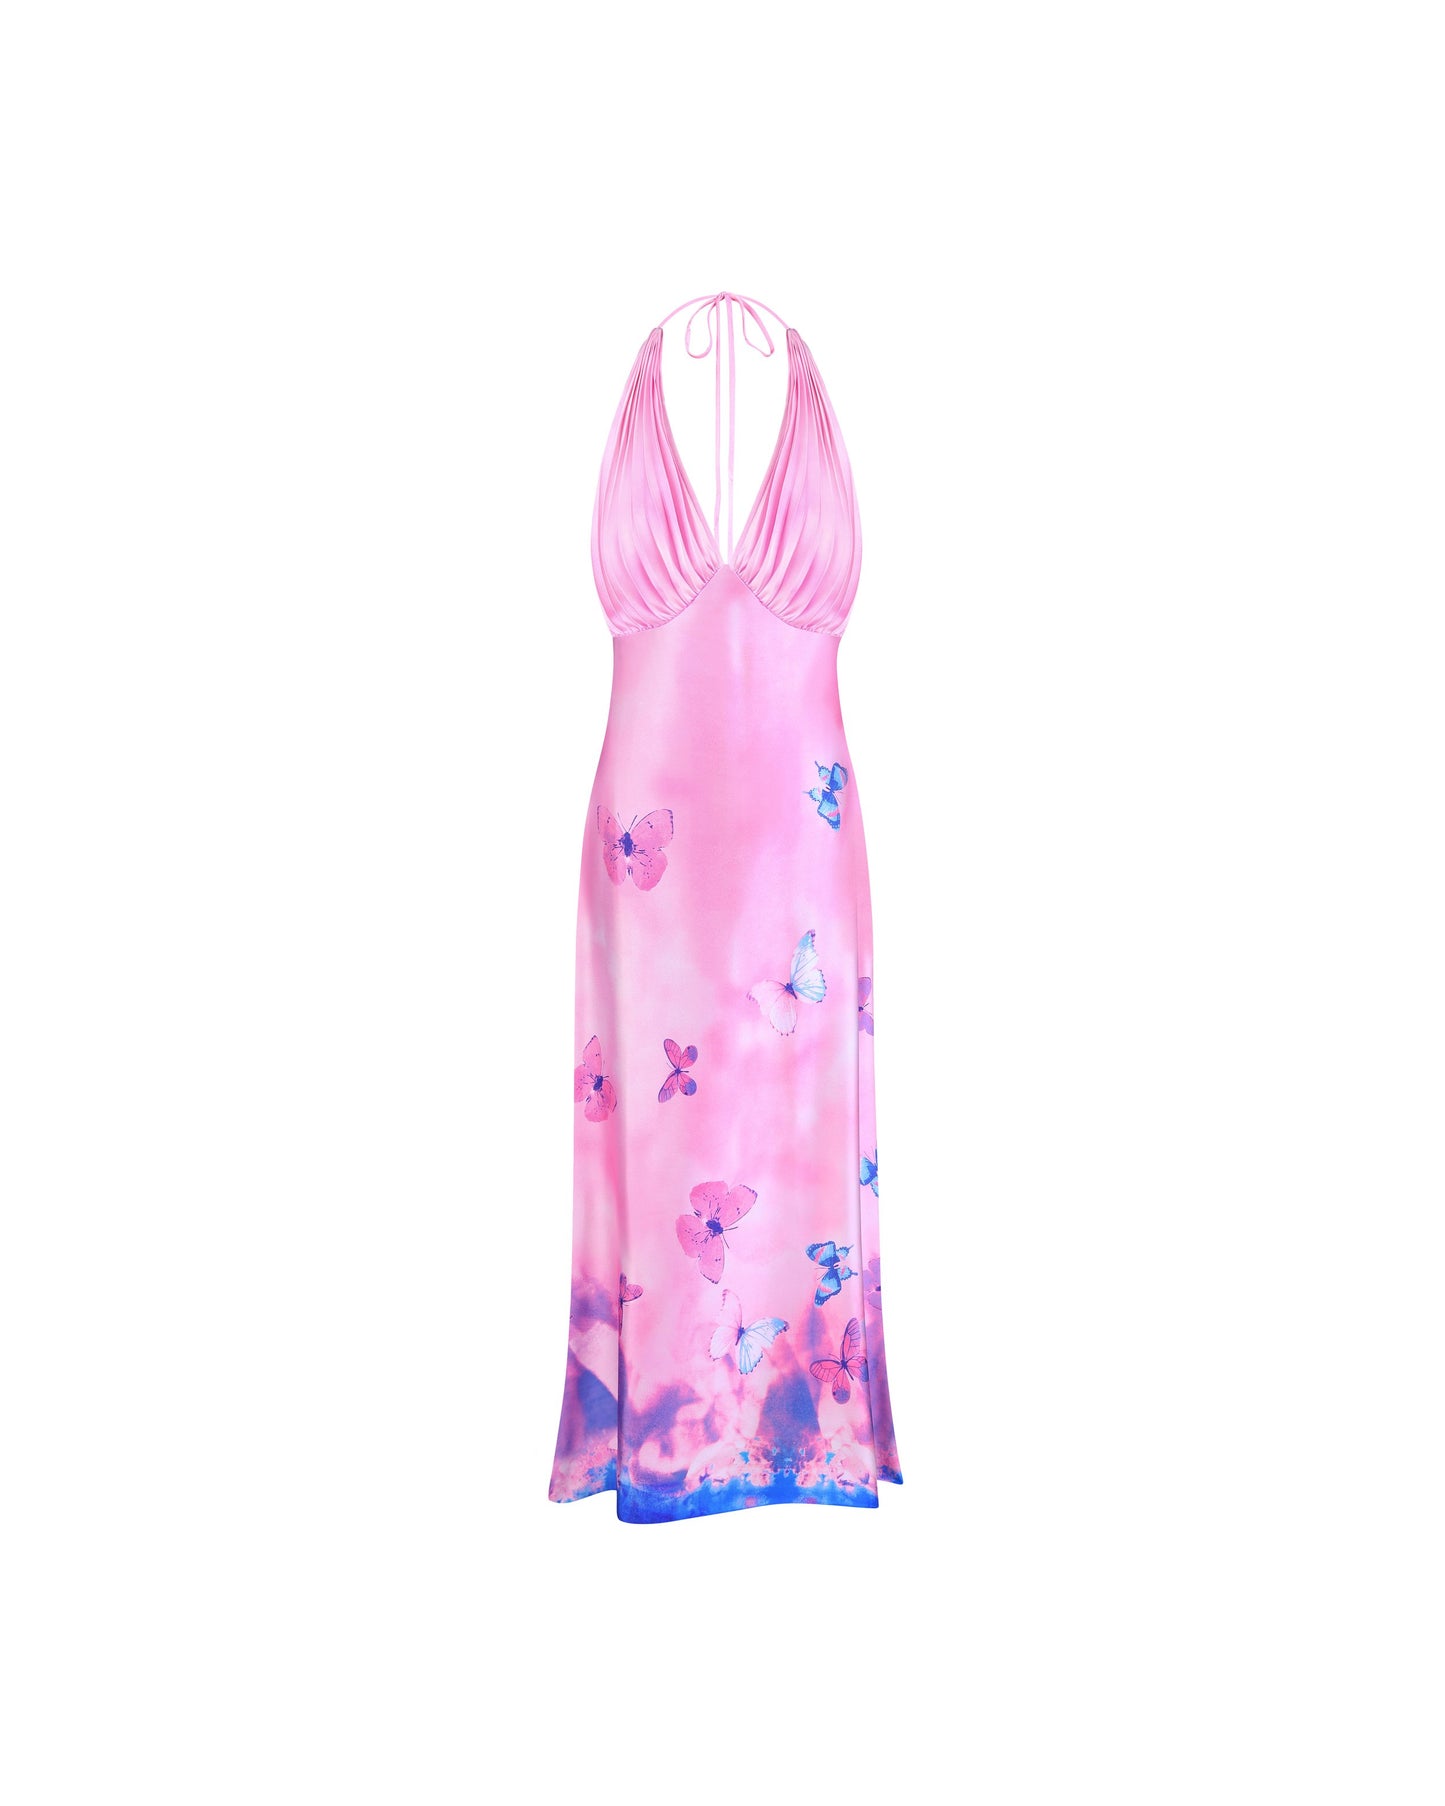 Ms. Pleat Dress (Pink Meadow)